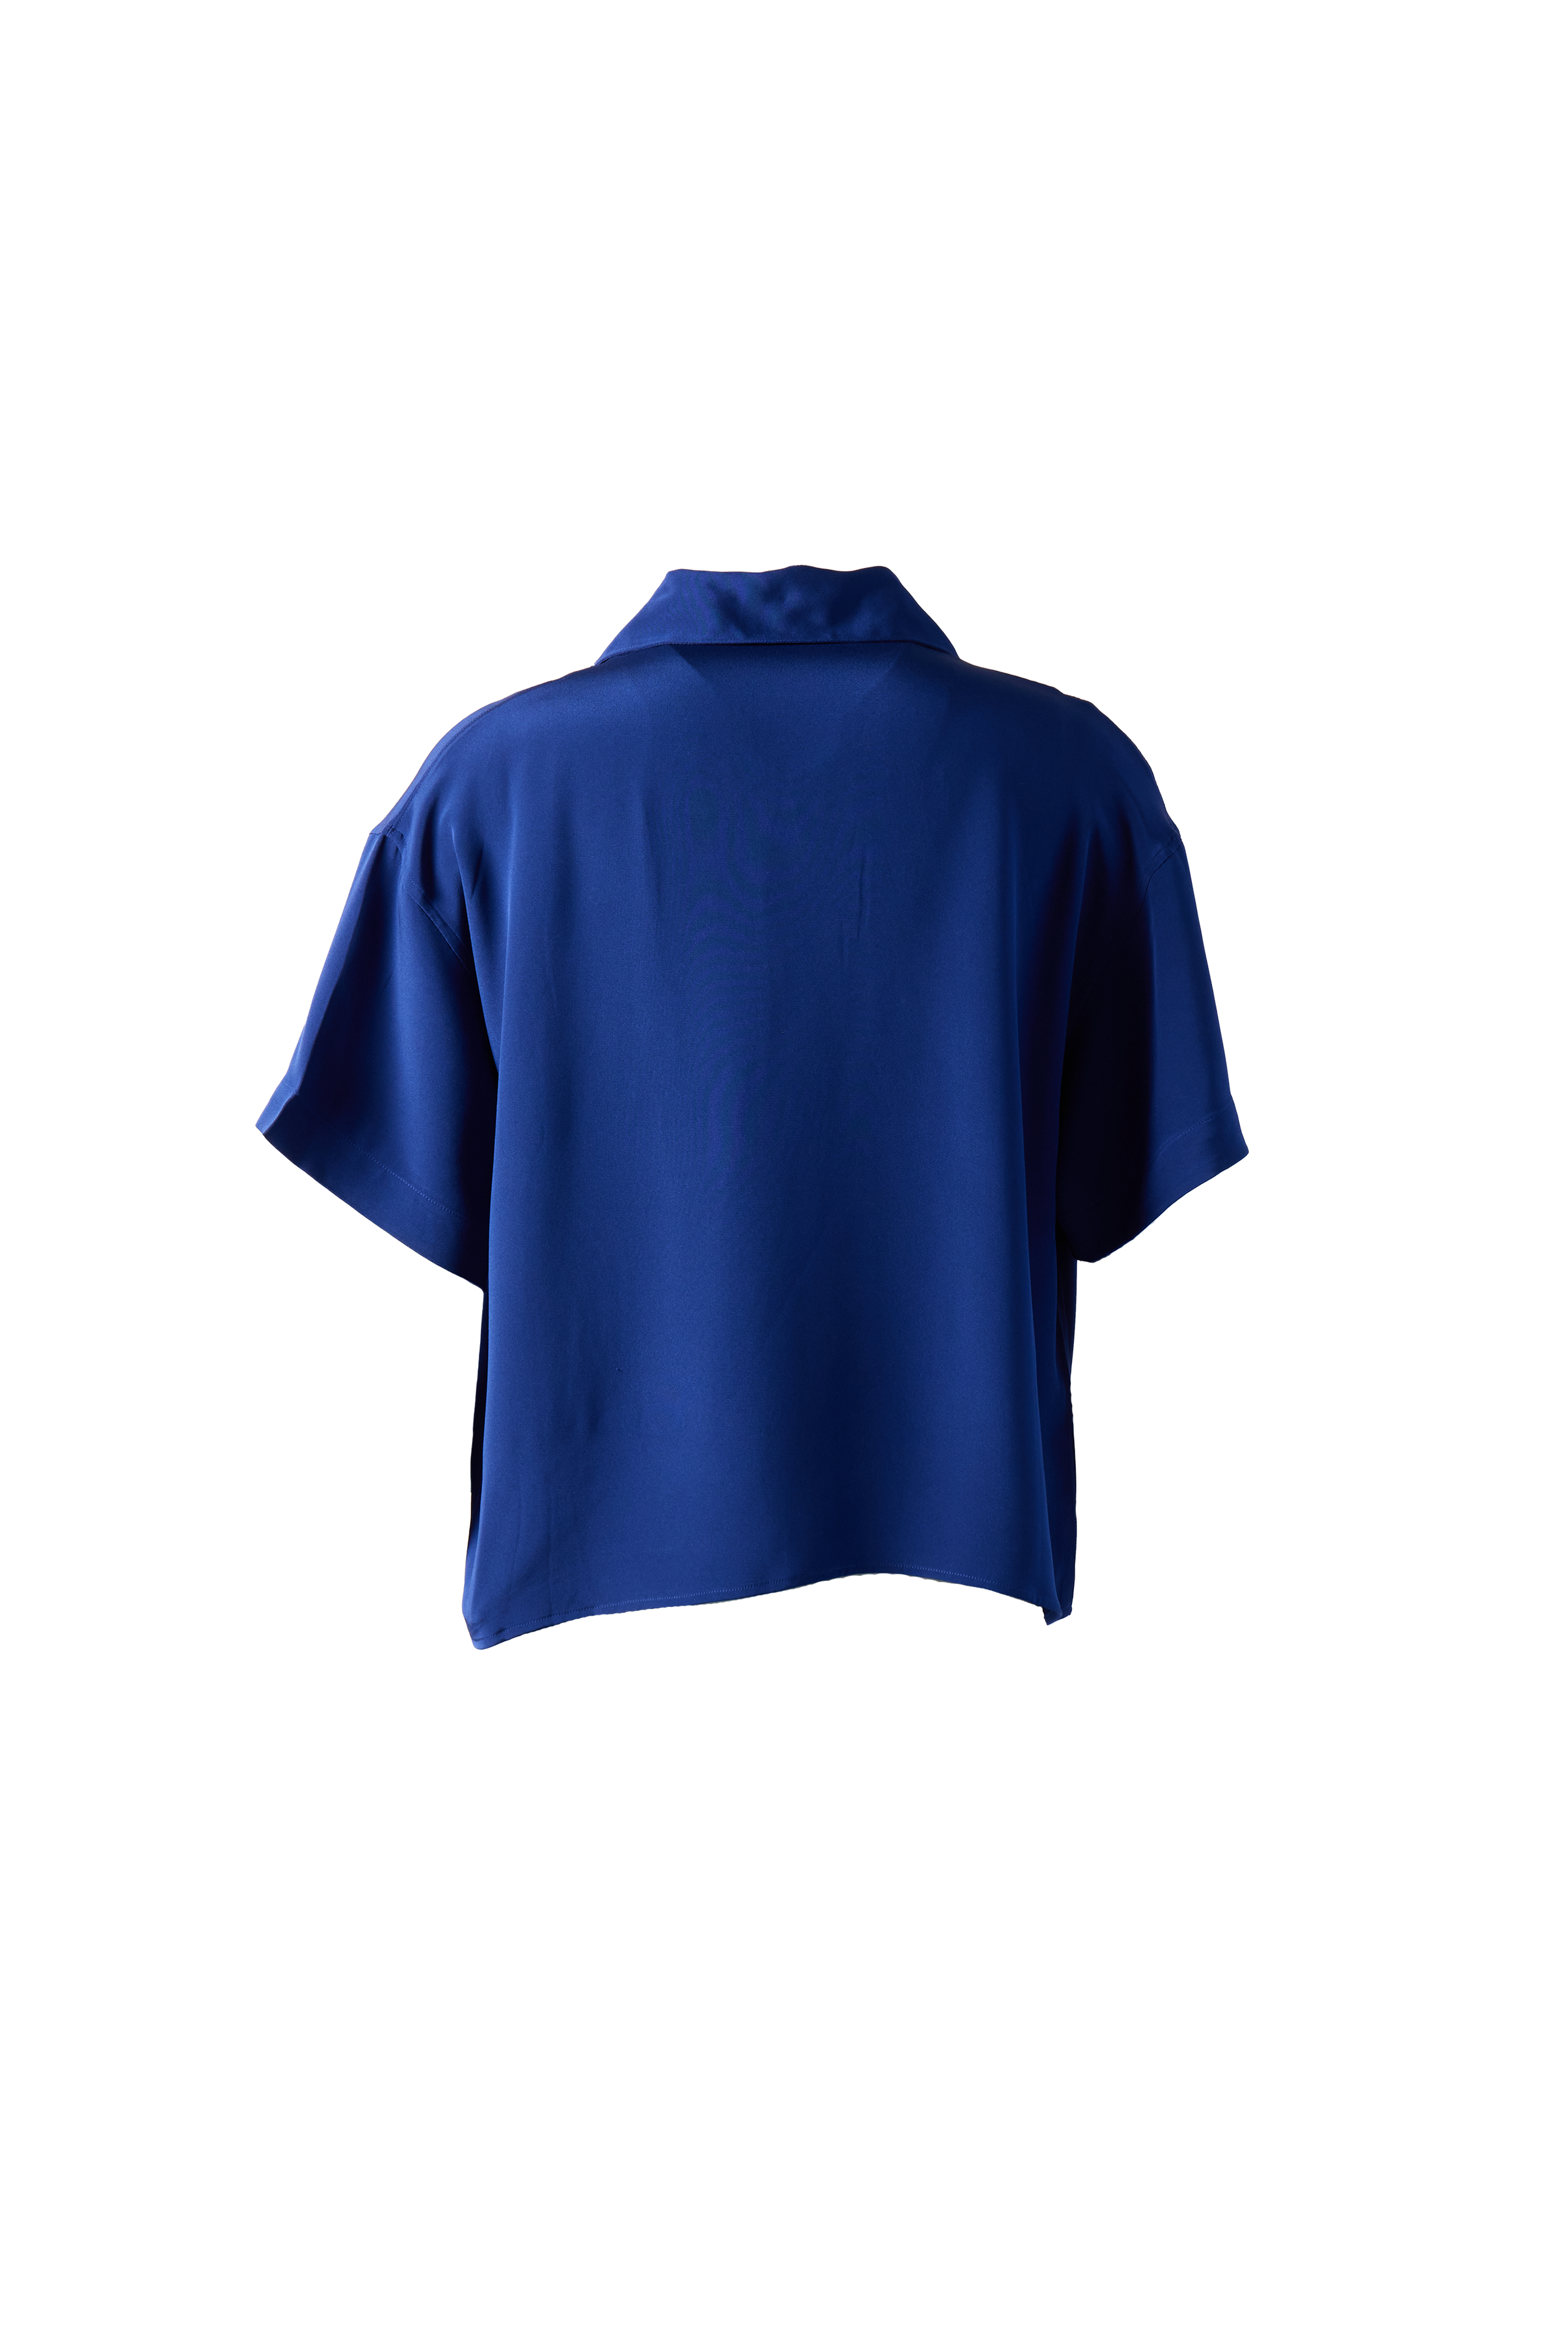 GLASS CYPRESS - Nightsky Silk Shirt product image